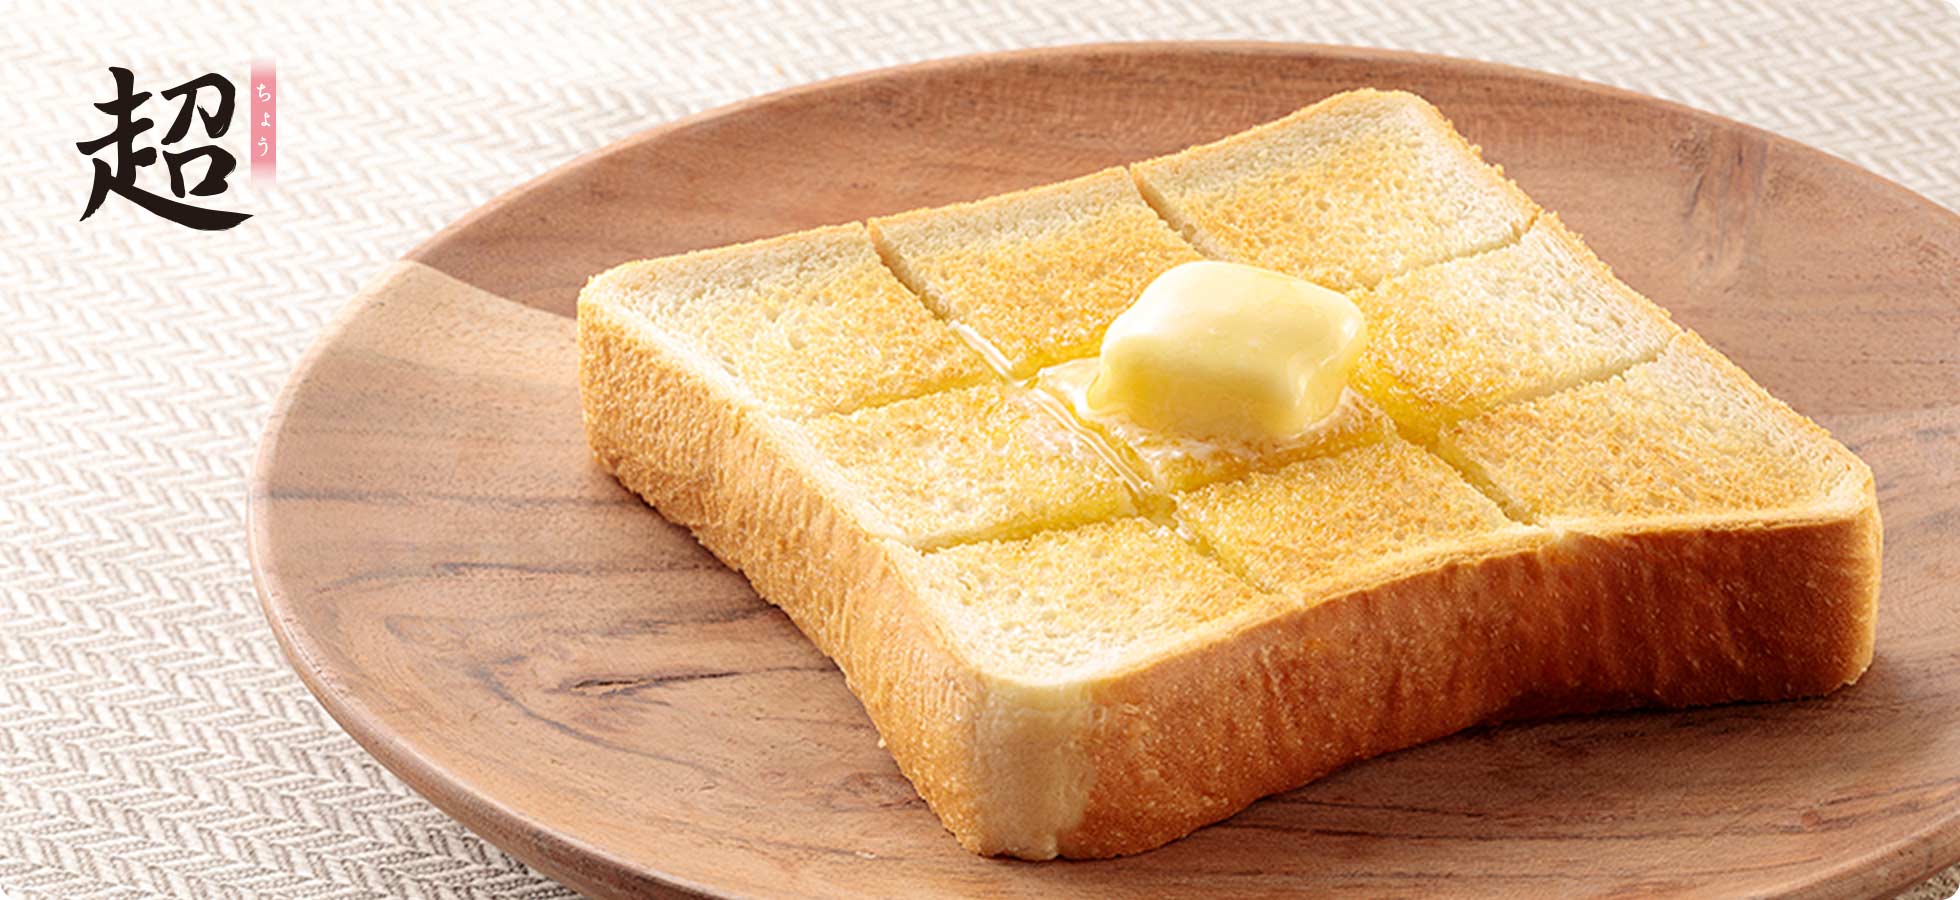 バターの乗った食パン「超」